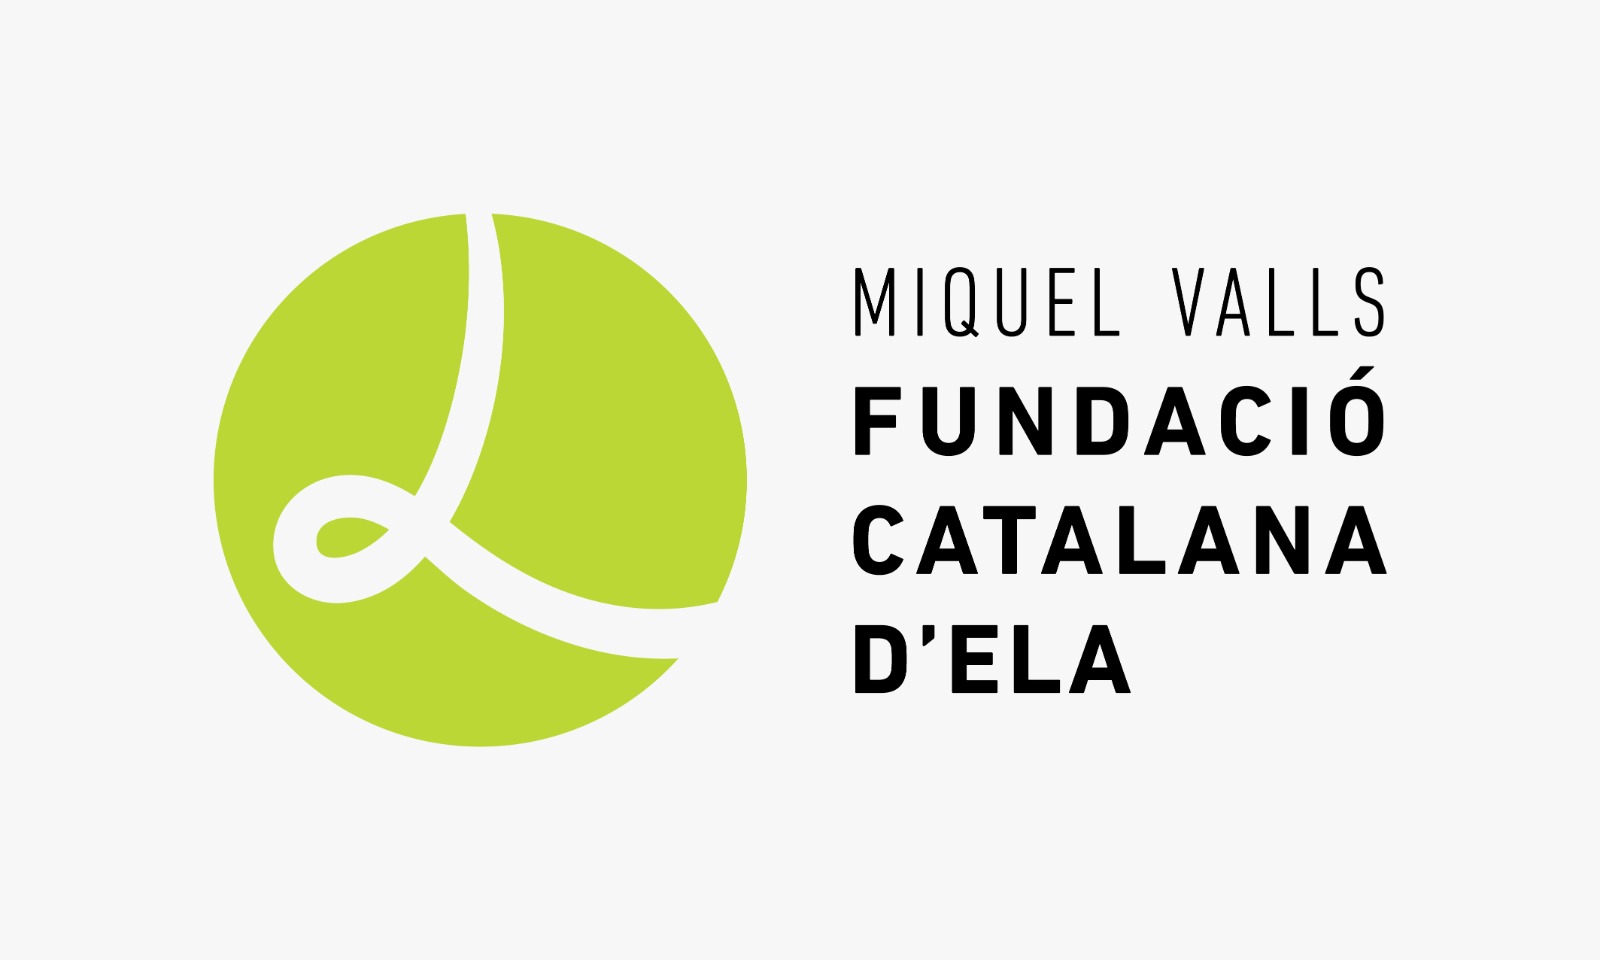 Fundación Catalana de ELA Miquel Valls